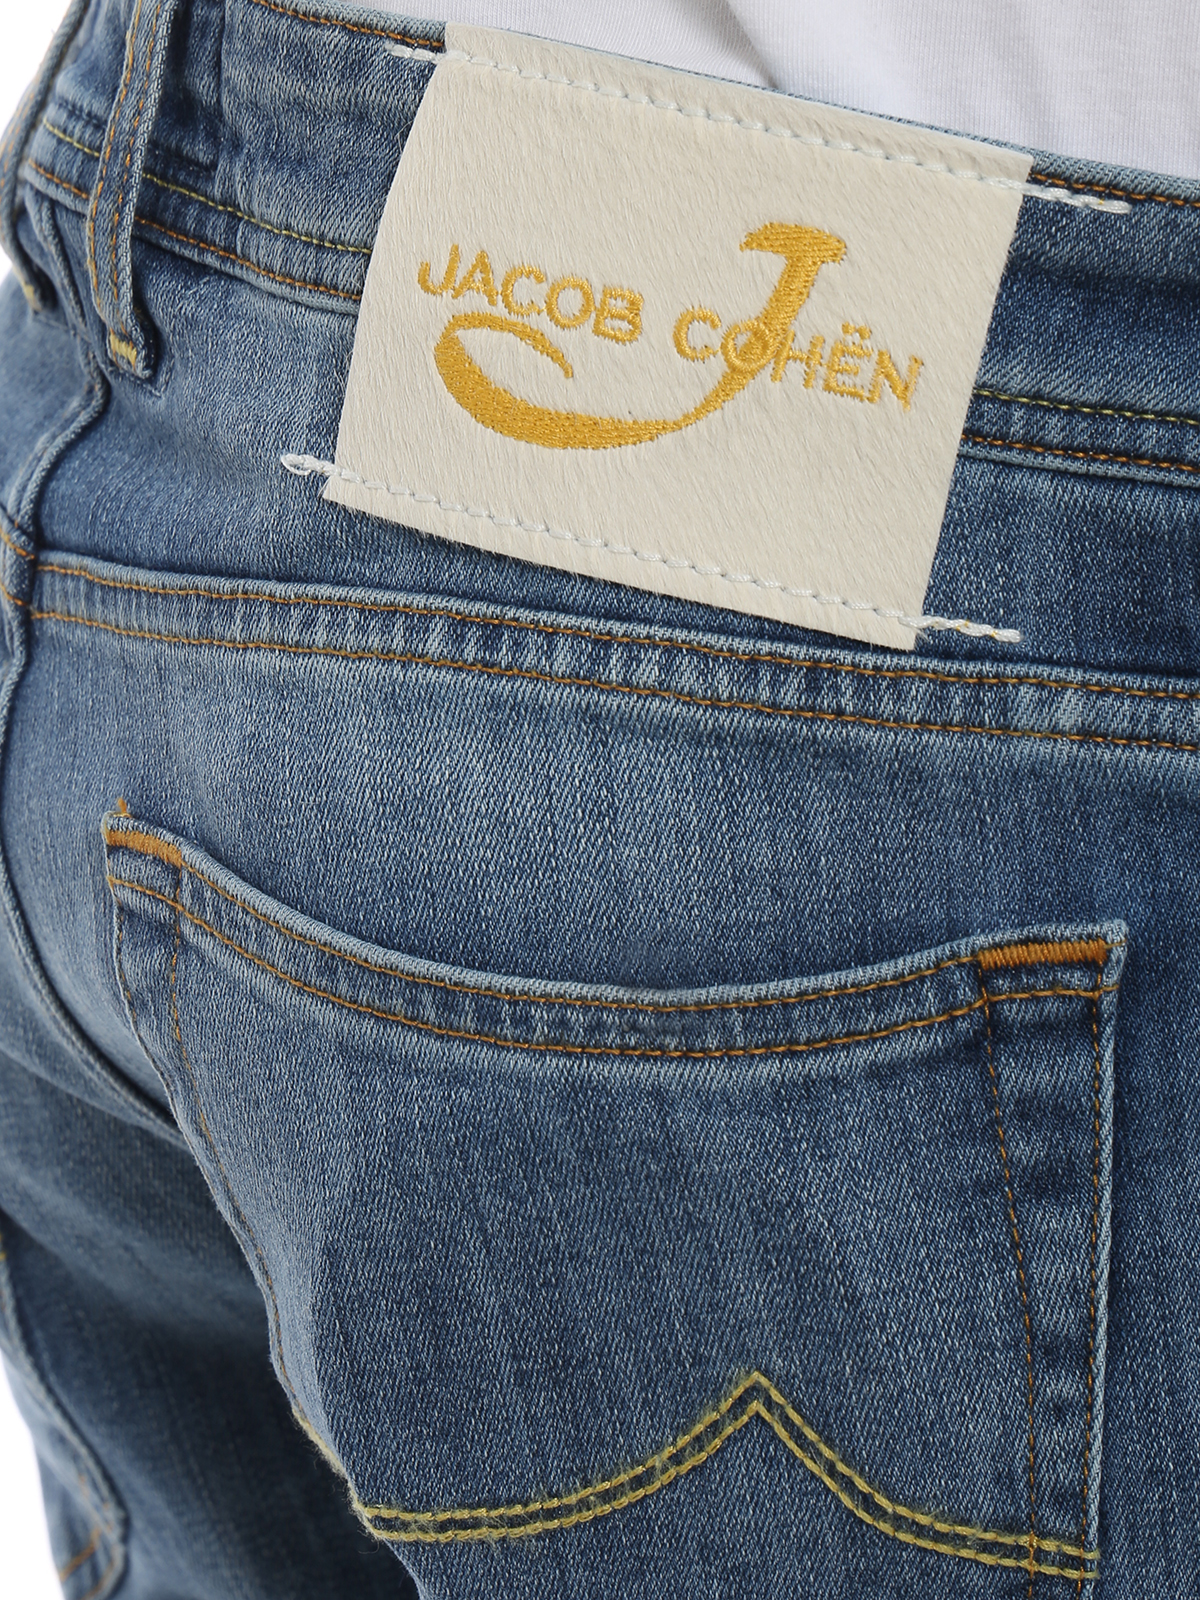 jacob cohen 622 jeans